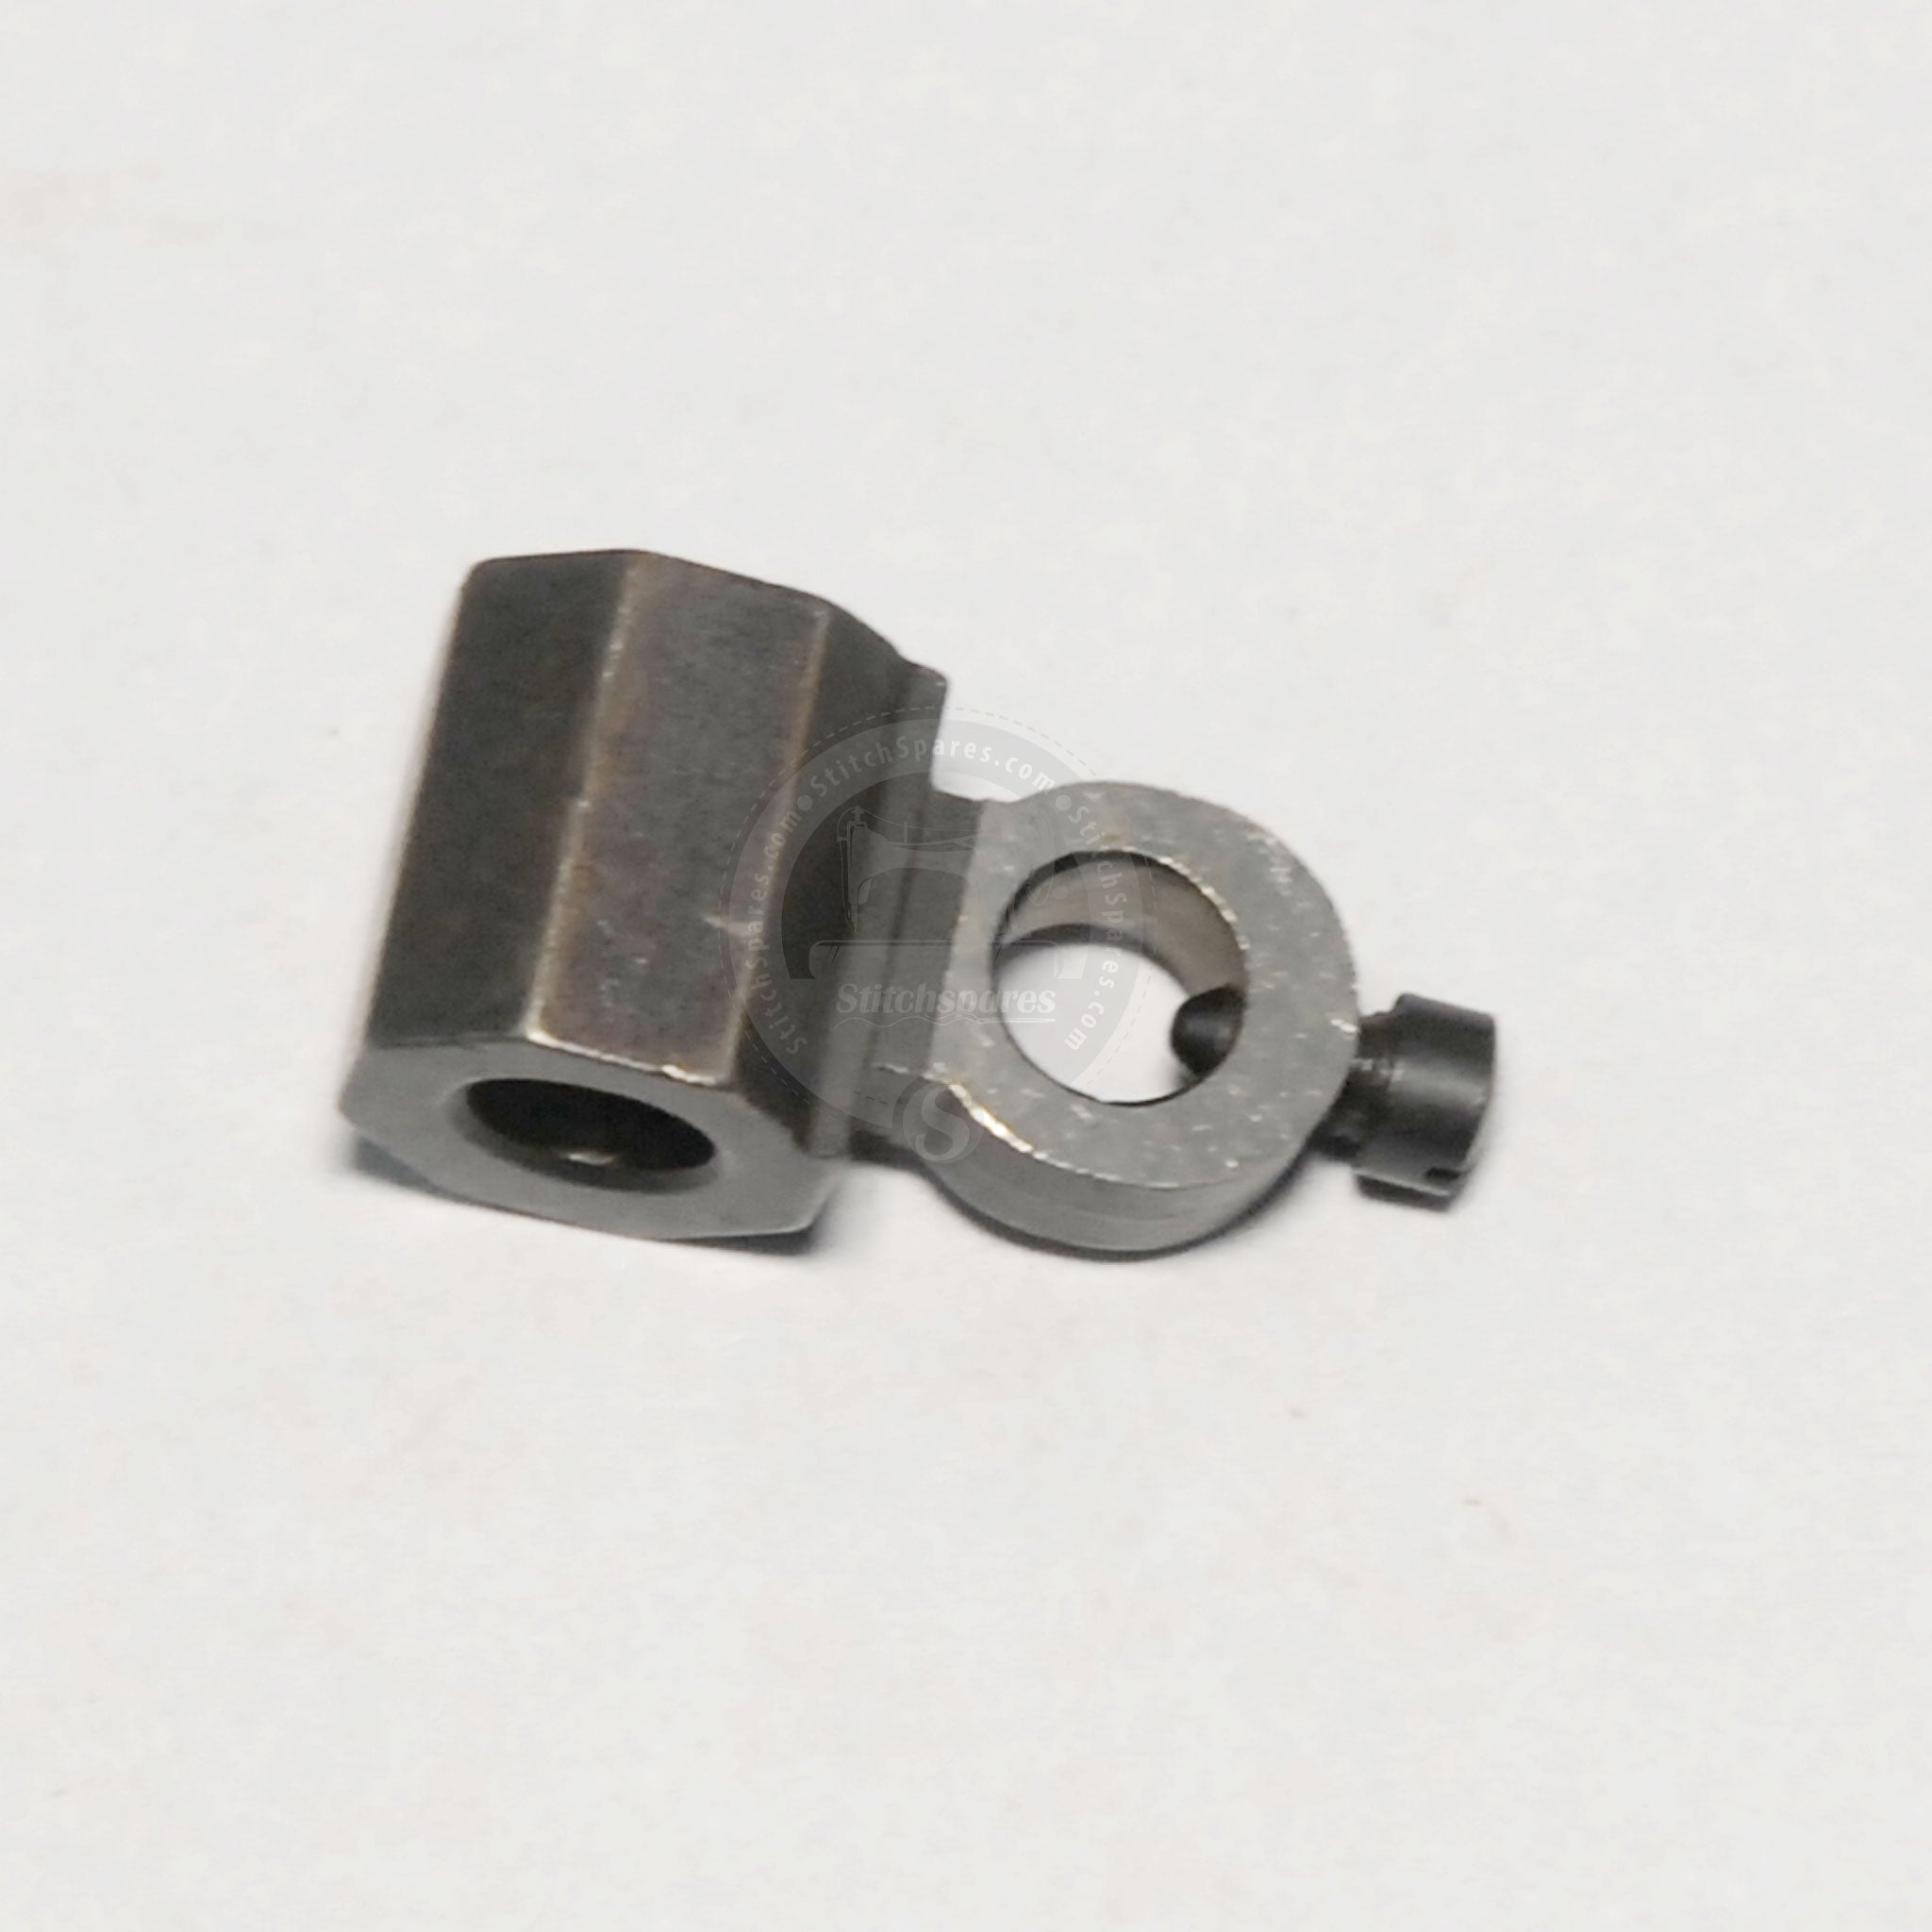 73-116 Soporte de extremo de barra de aguja Kansai Máquina de agujas múltiples